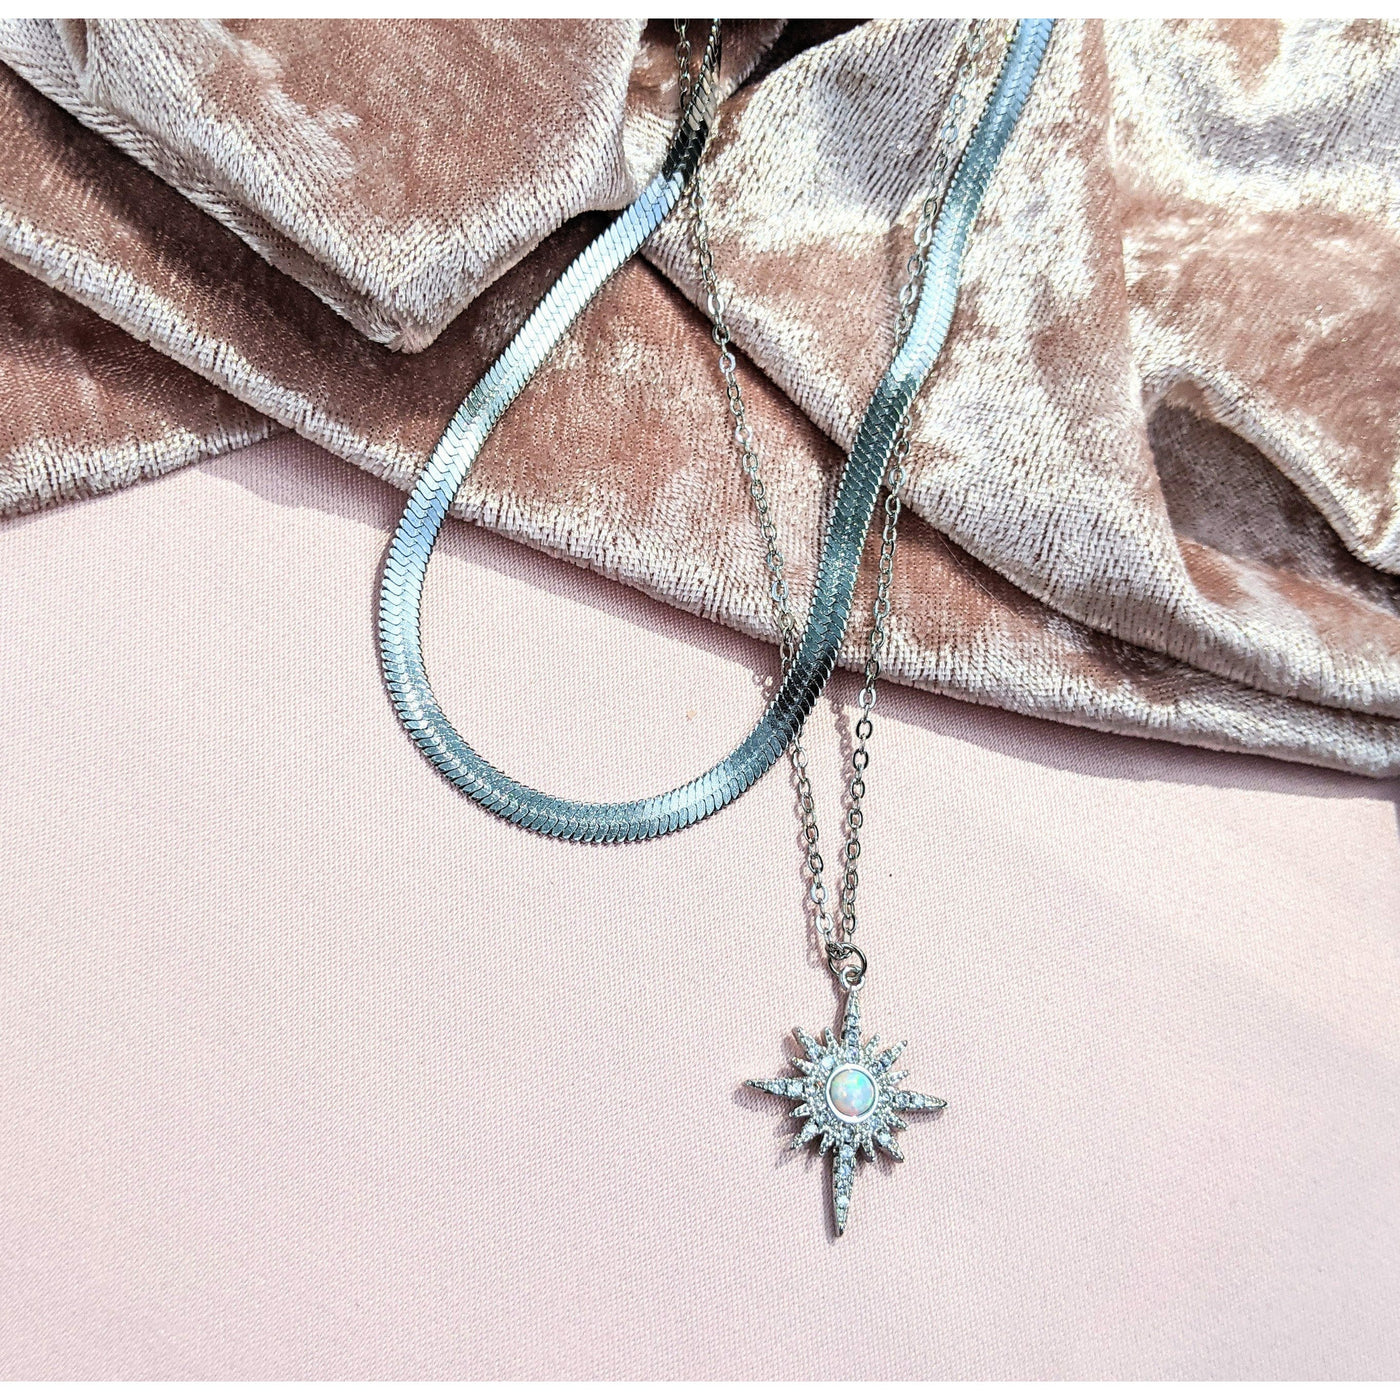 Starburst Charm Necklace